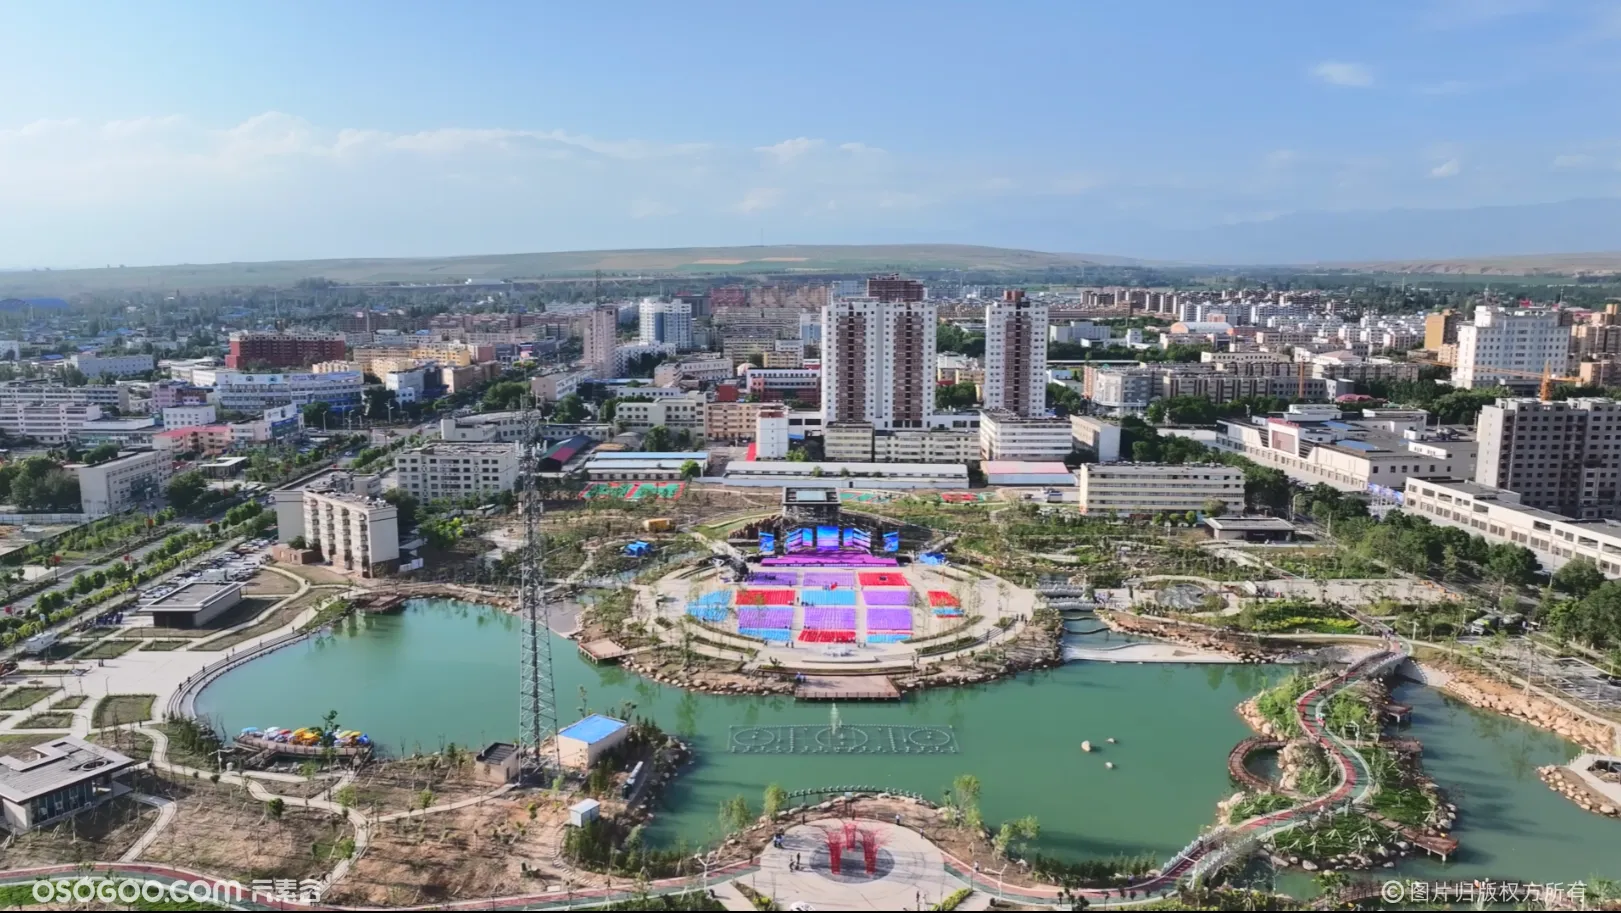 新疆霍城：薰衣草之乡鲜花海洋，400台无人机表演展现魅力飞舞